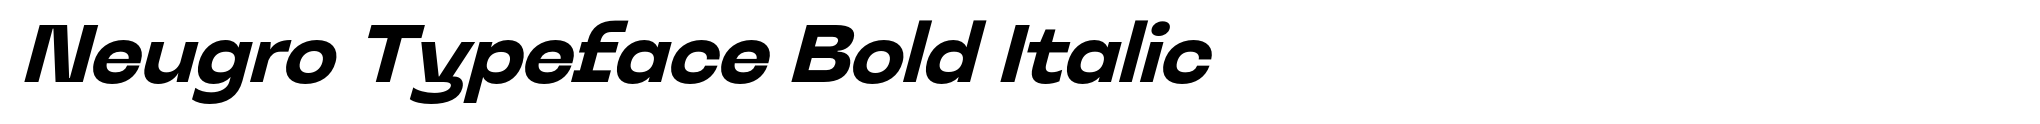 Neugro Typeface Bold Italic image